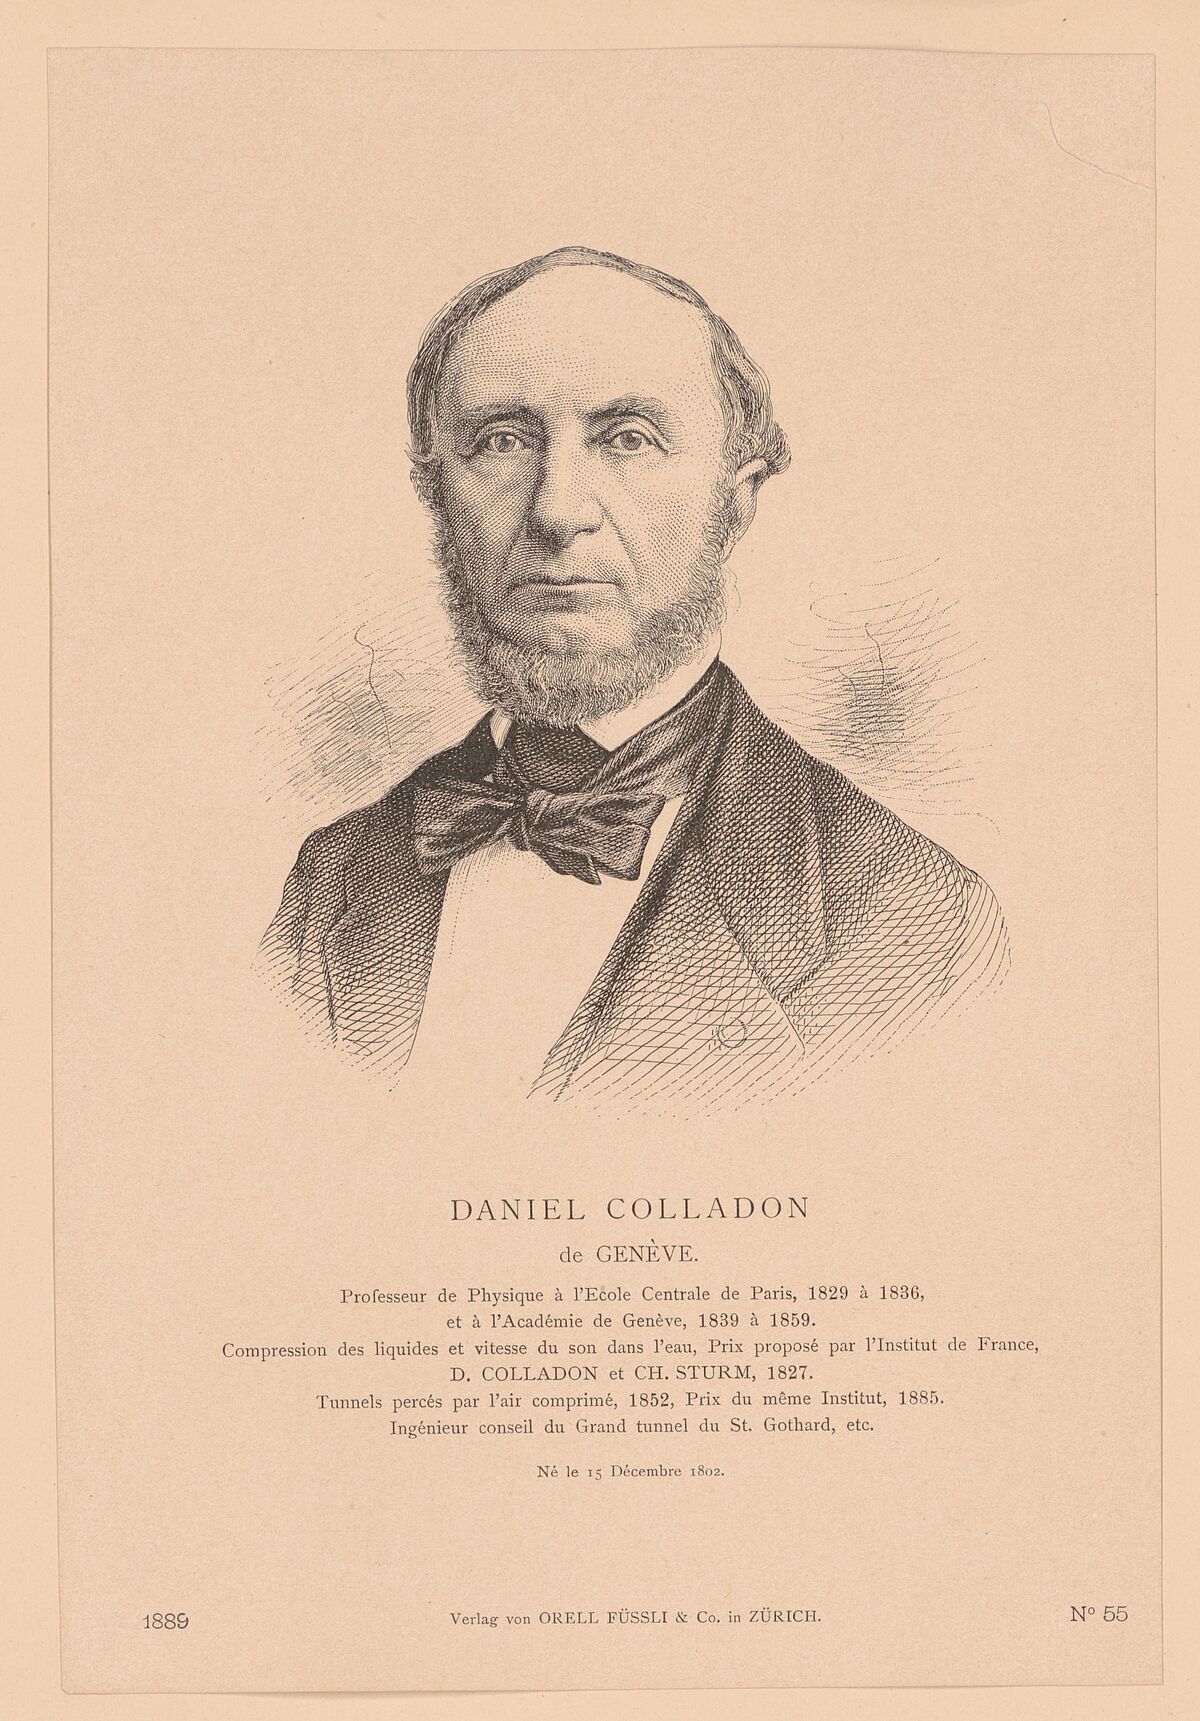 GFD 1/44: Bildnis von Jean-Daniel Colladon (Künstler unbekannt, 1889)